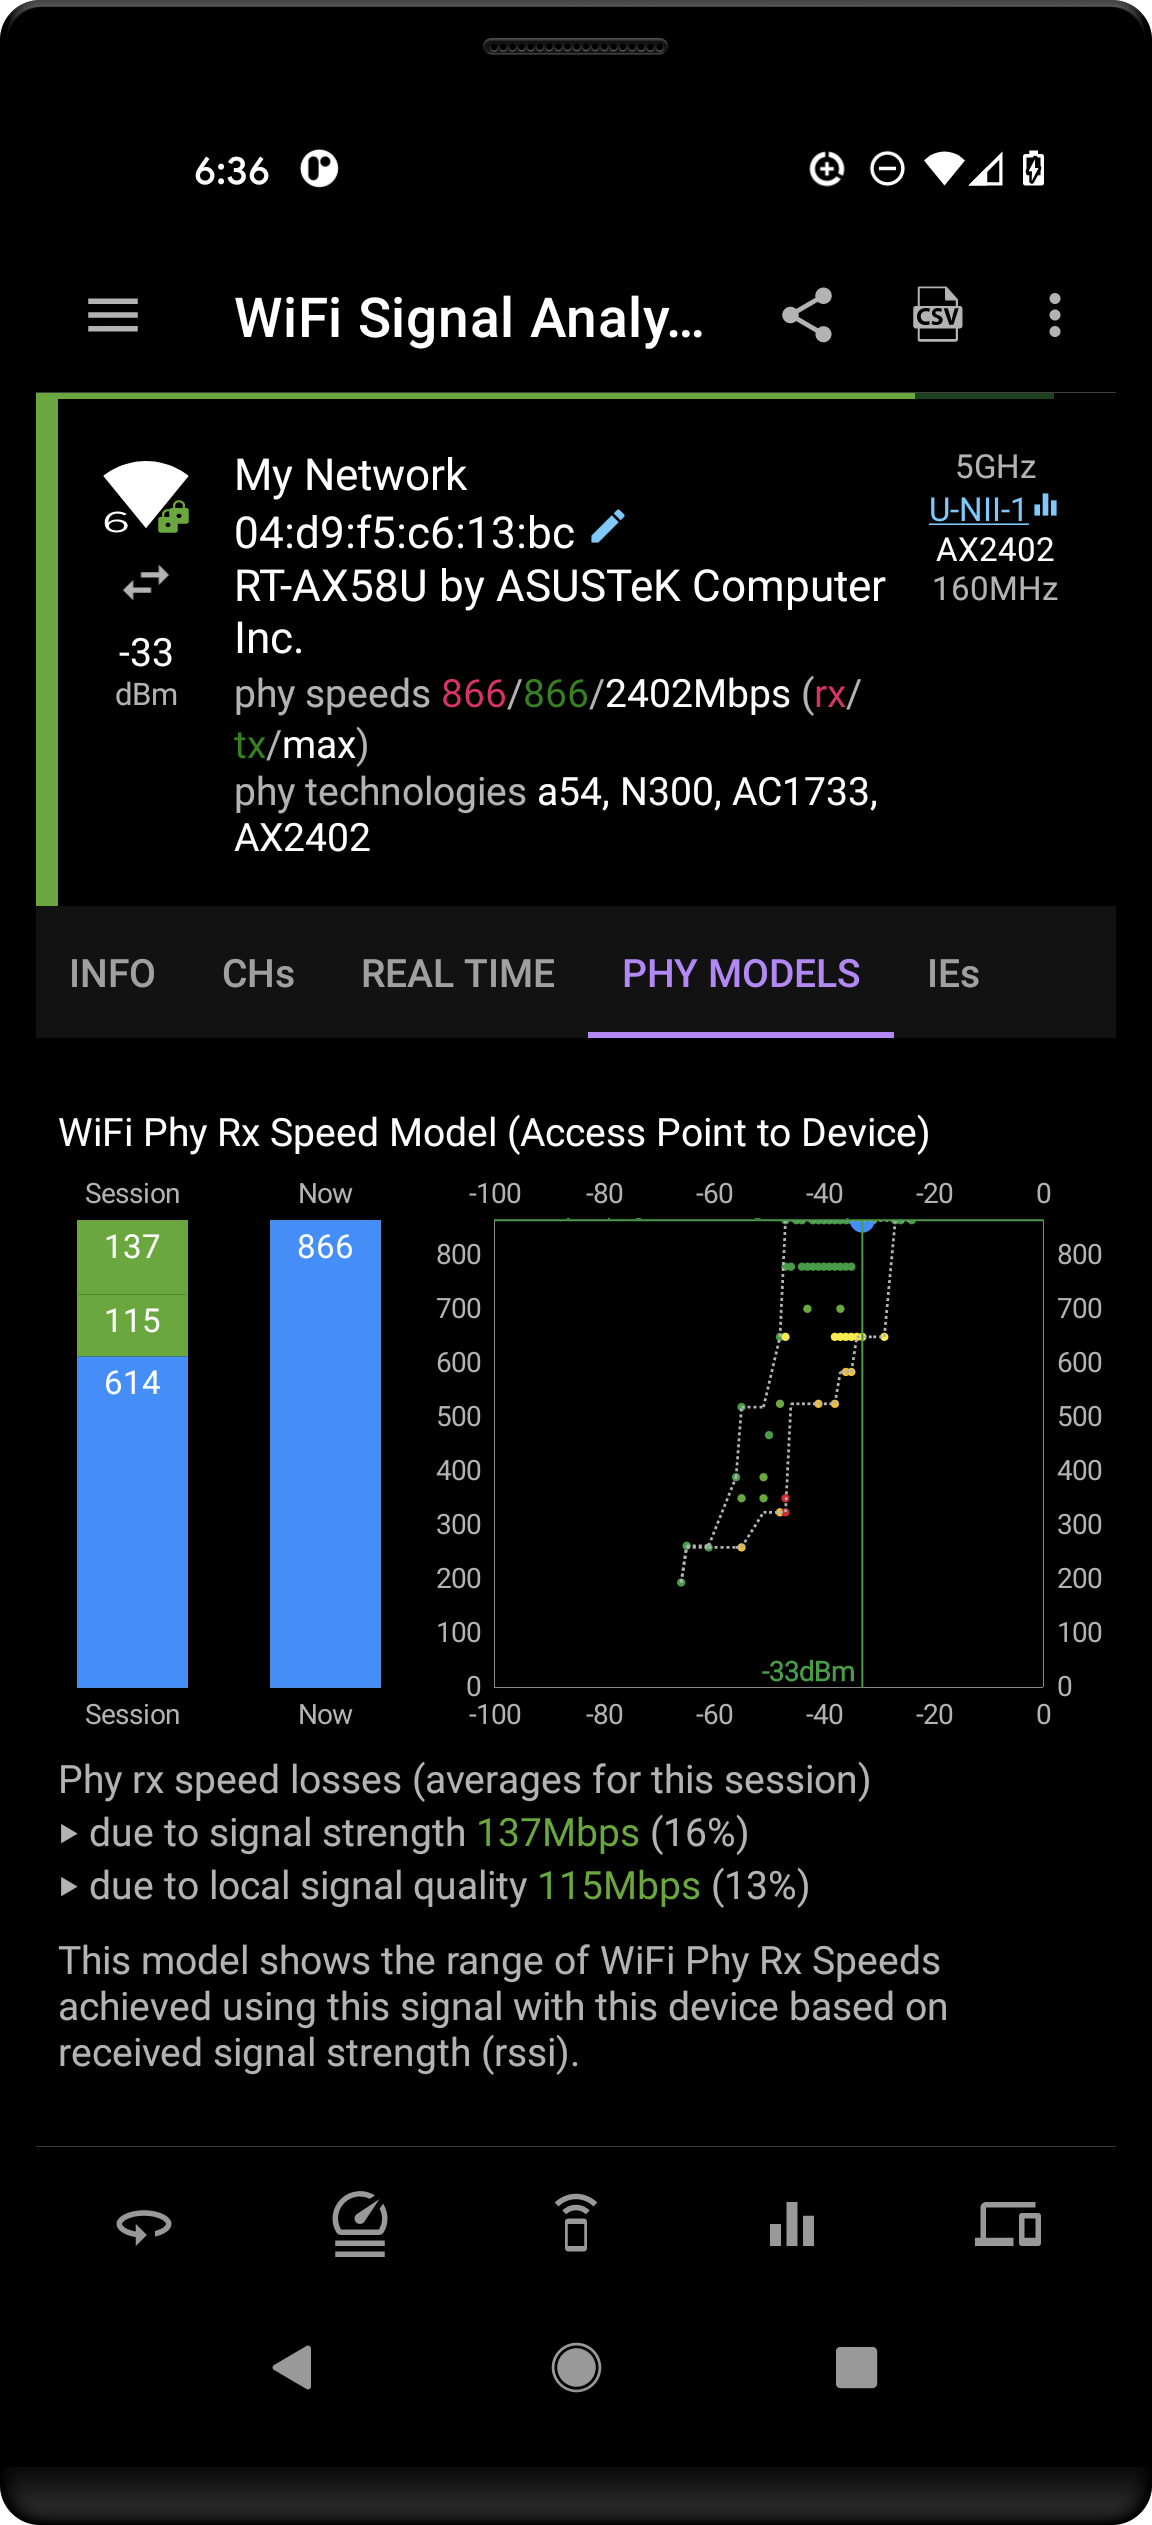 wifi signal analyzer phy models